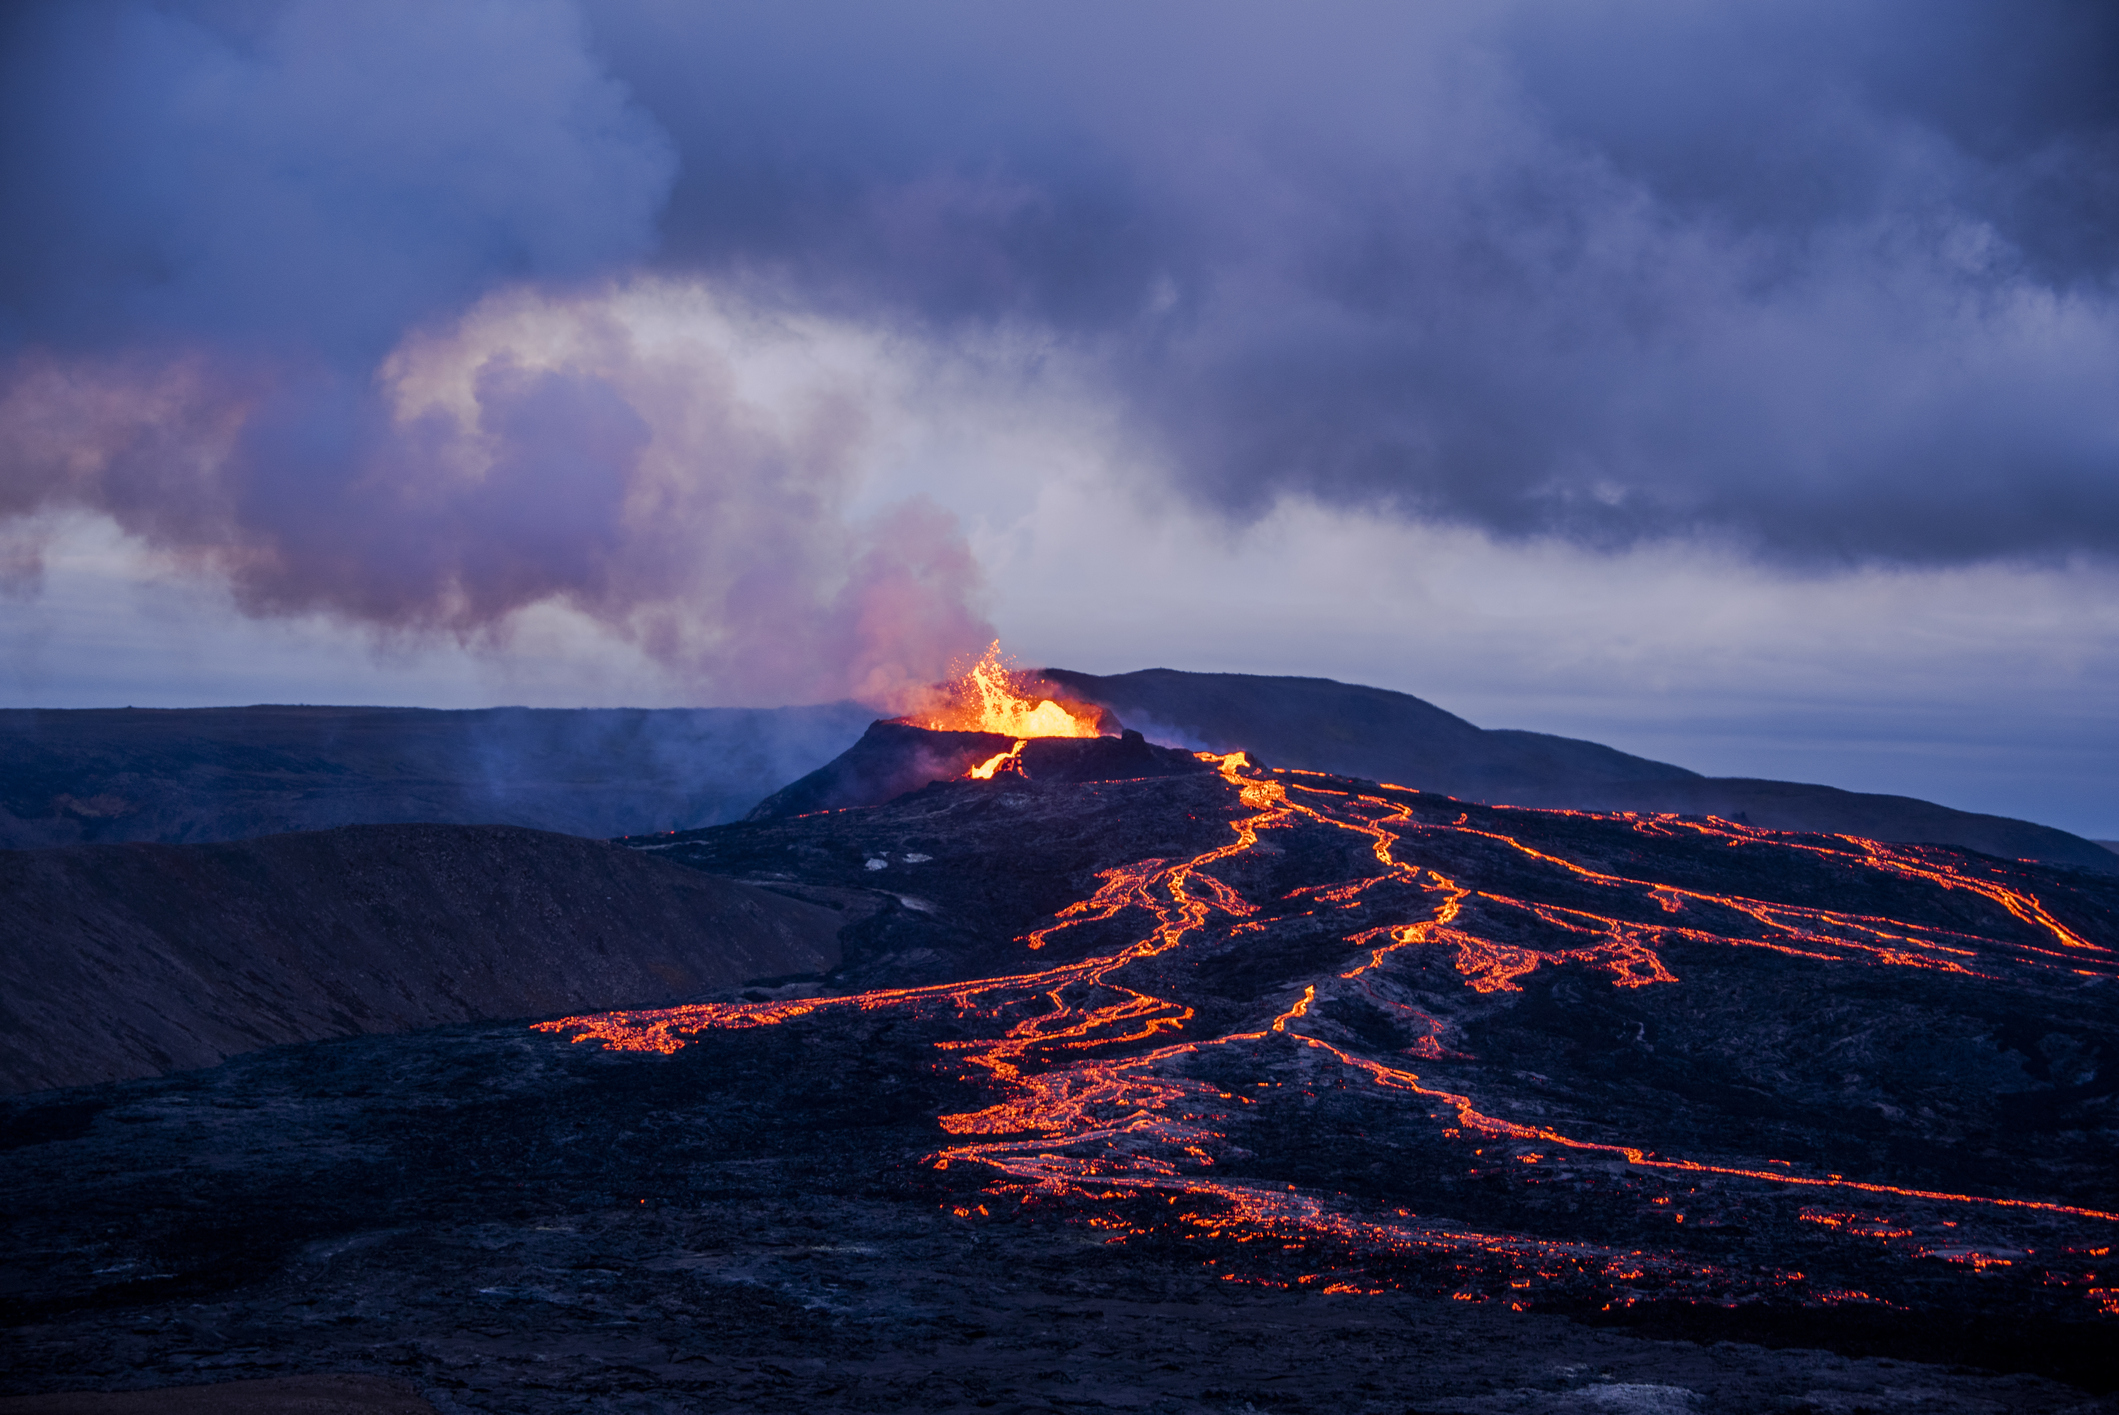 Lavastrømme og Eyjafjallajökull i udbrud i skumringen.